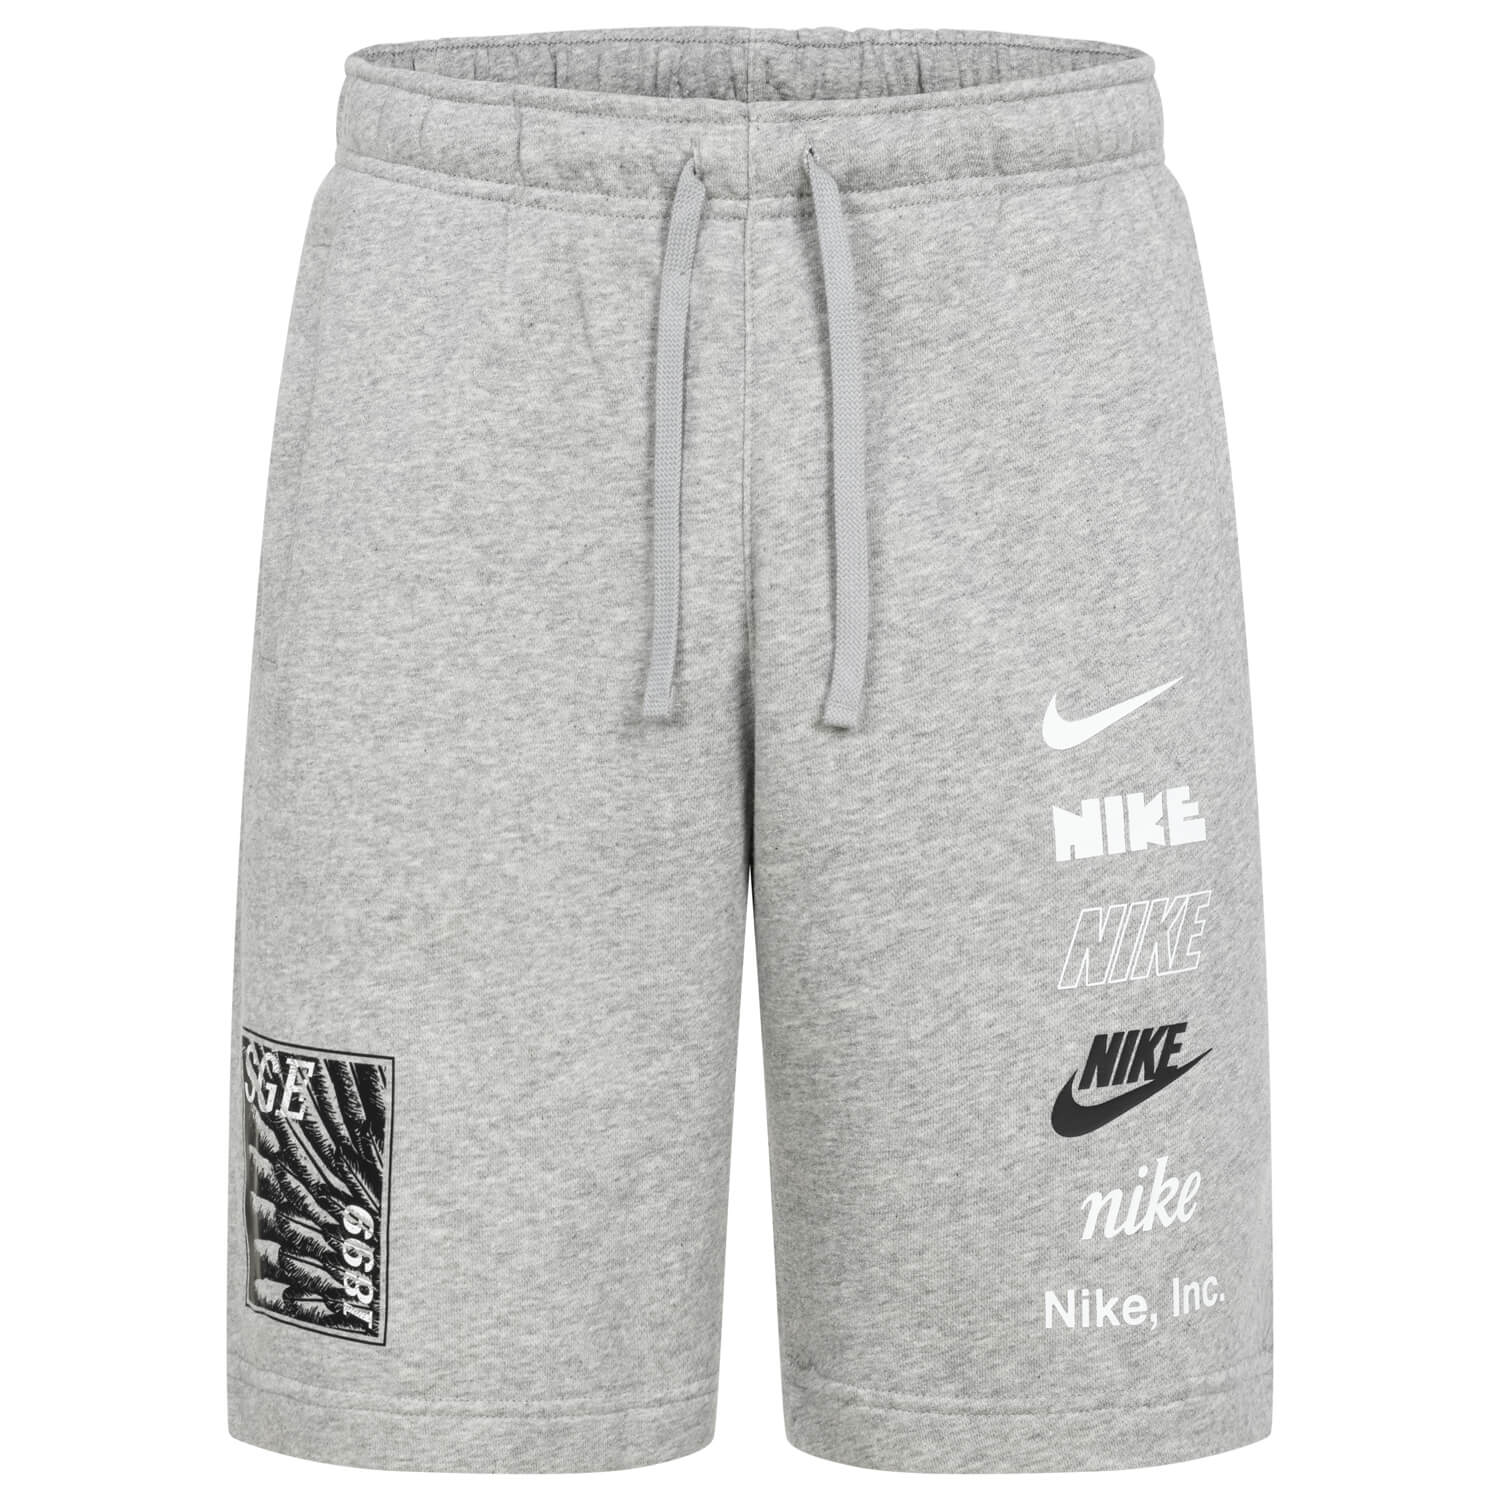 Bild 1: Nike Shorts Feather